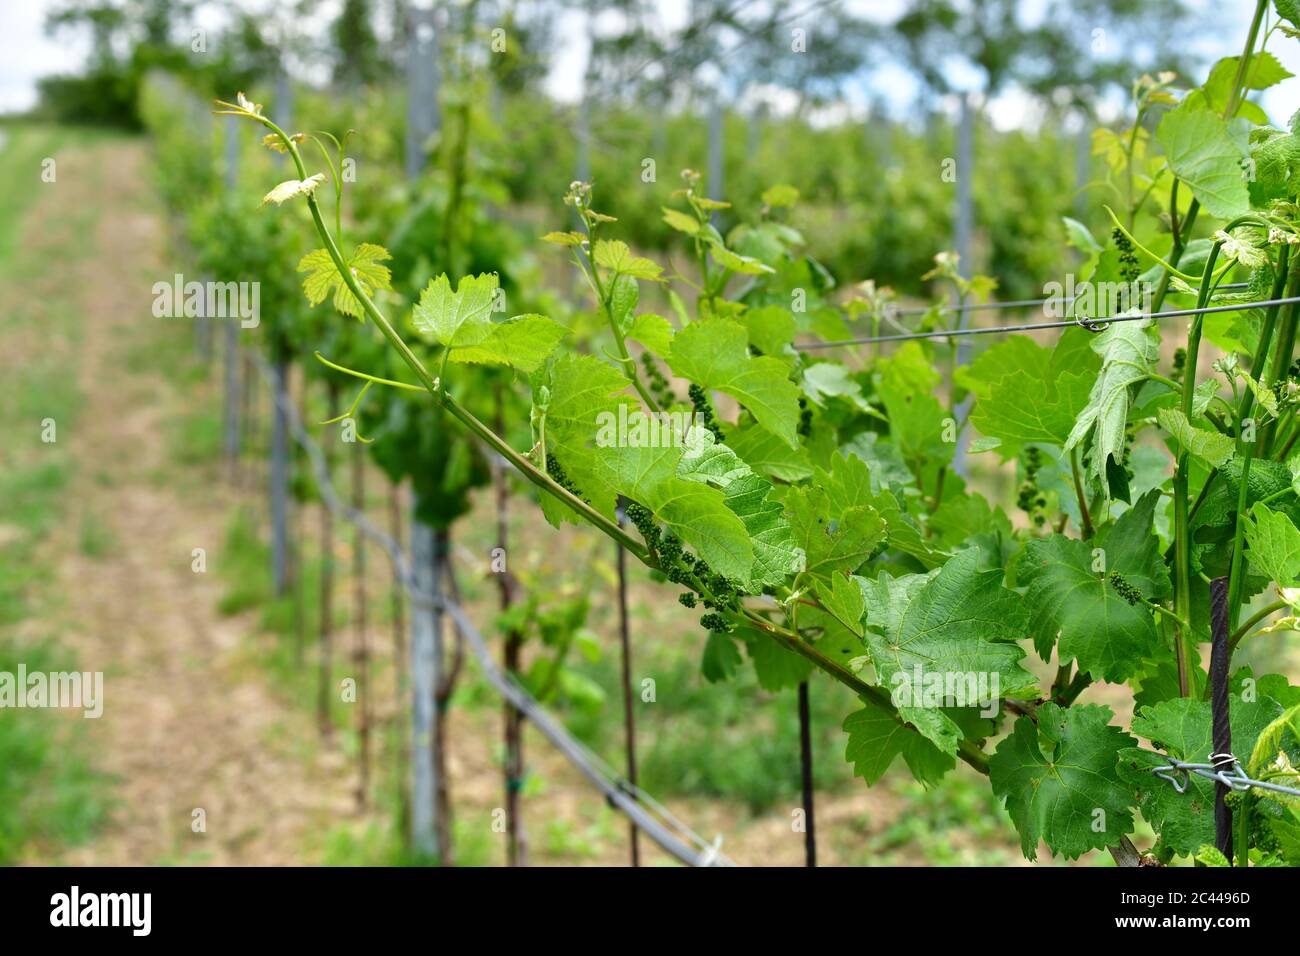 Wurzelstock mit jungen grünen Veltiner Weinreben und Blättern (Vitis vinifera), Weinviertel, Österreich Stockfoto